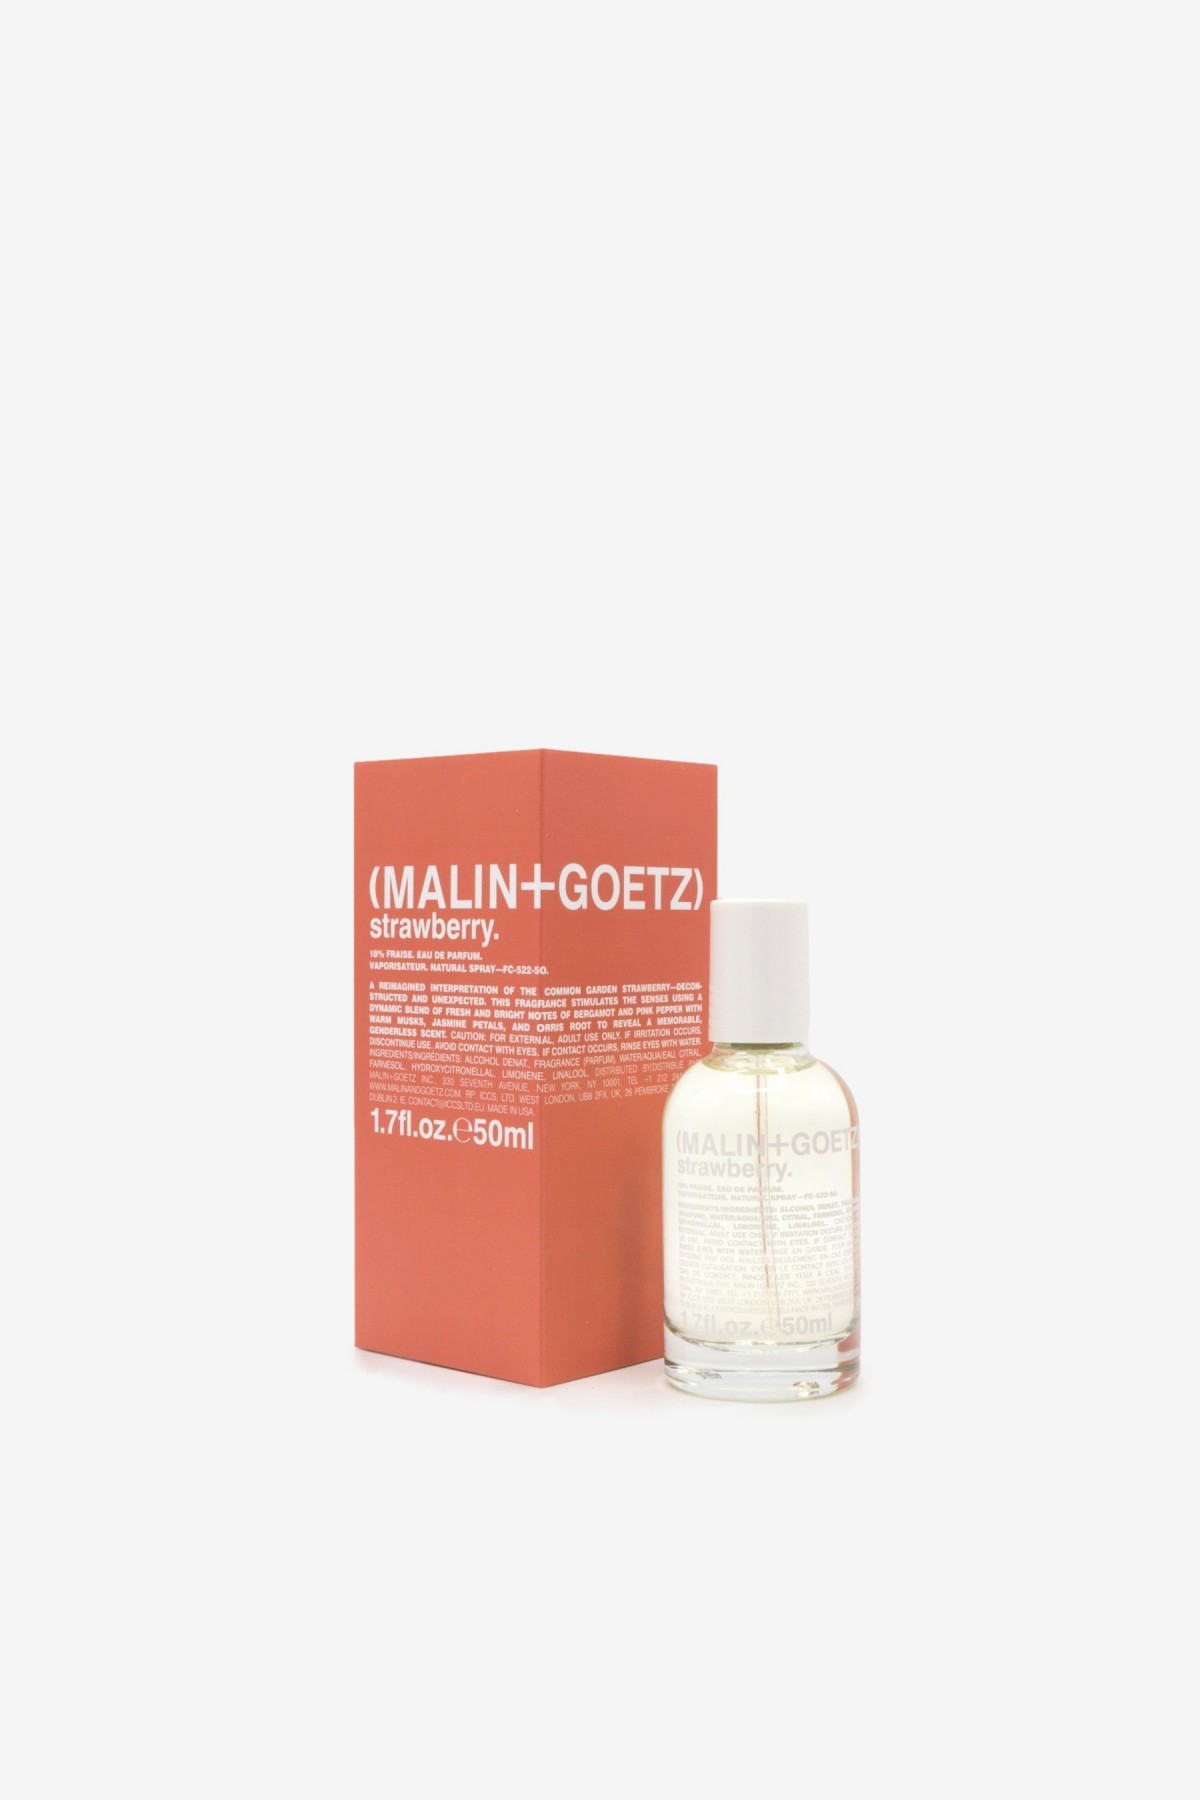 Malin+Goetz Strawberry Eau de Parfum 50ml in 